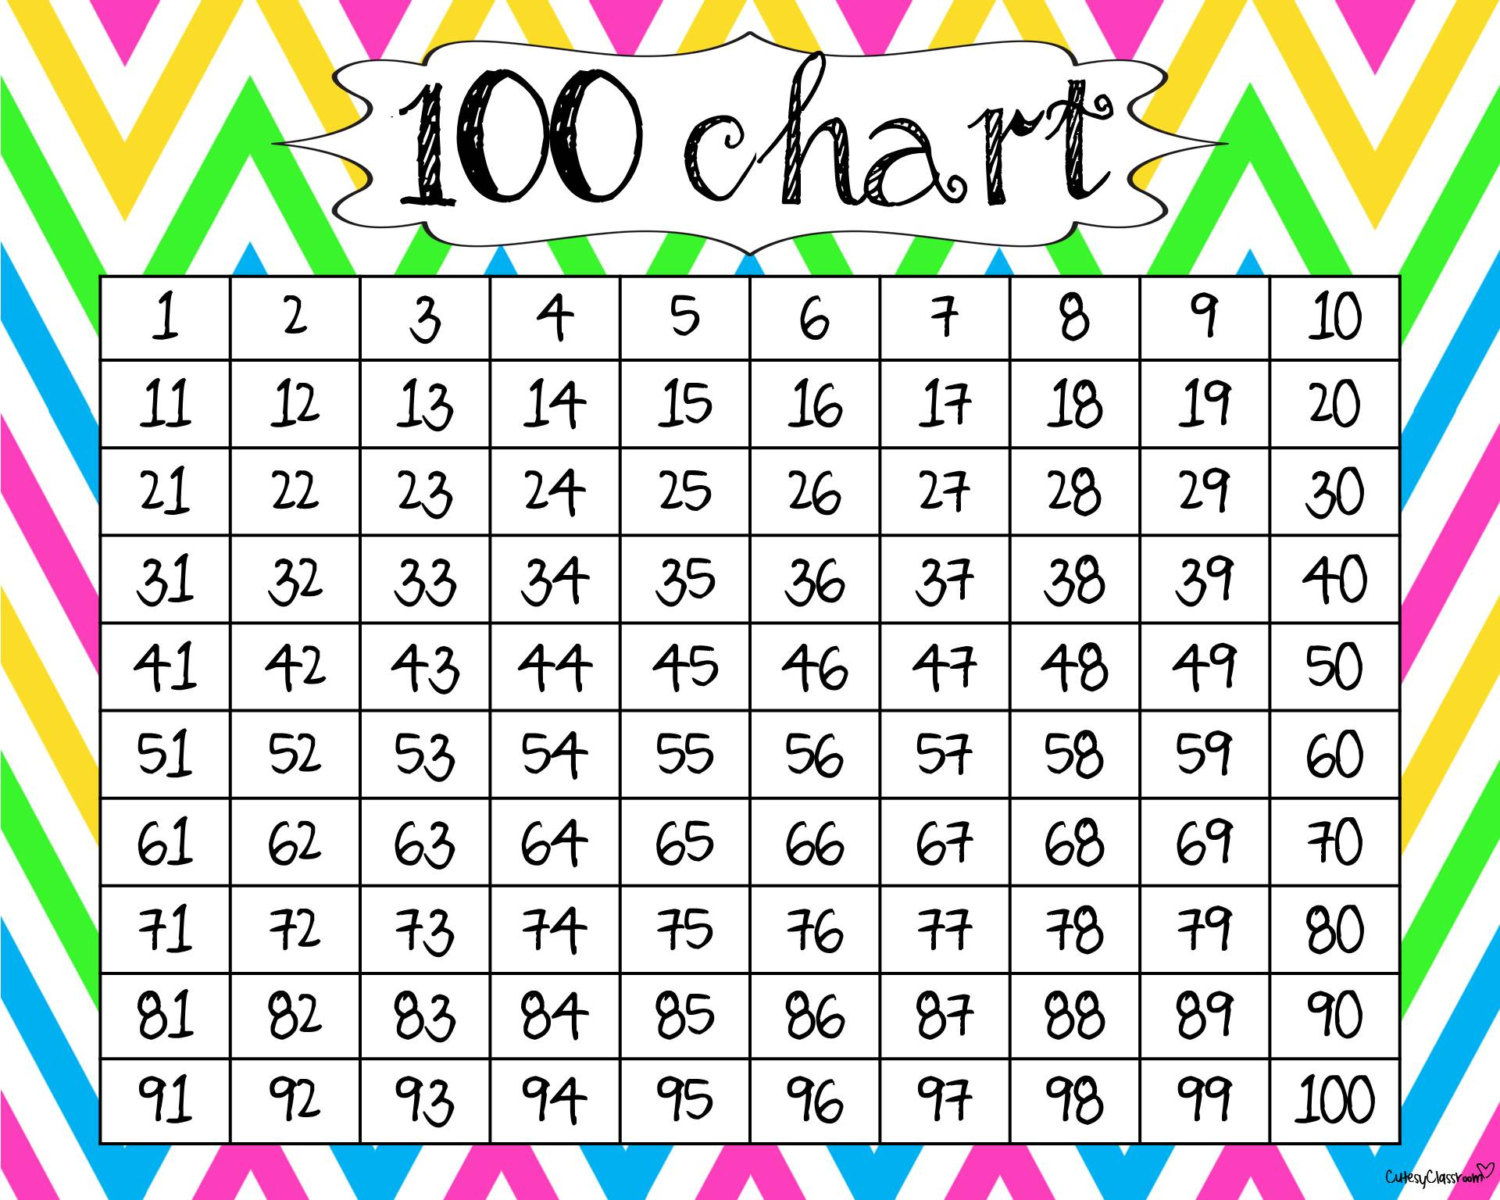 Free 100 Chart Printable